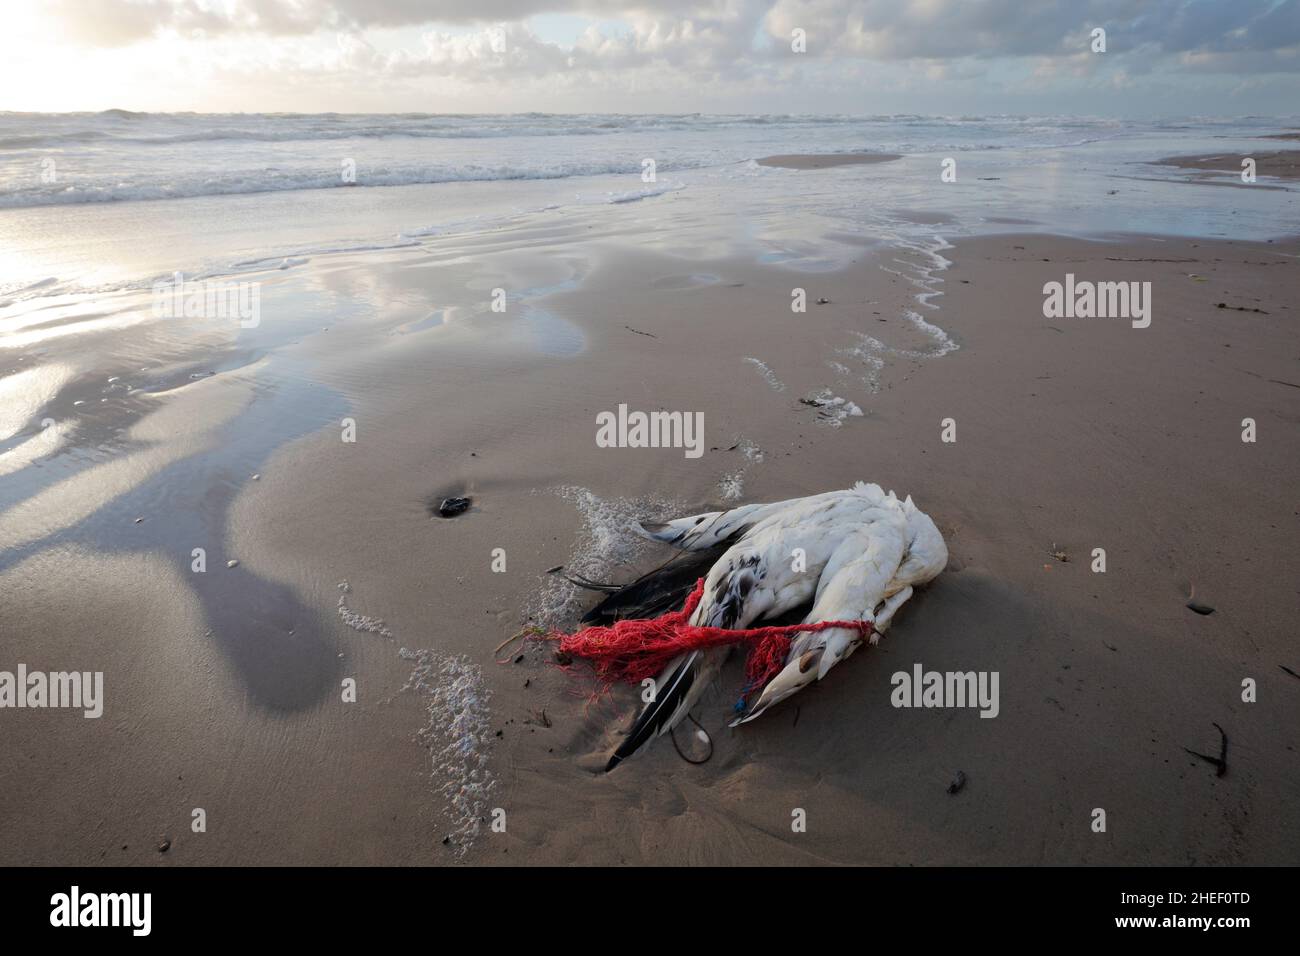 Gestrandete Seevögelchen (Nördlicher Gannet) wurden am Strand von Lonstrup, Dänemark, durch ein Fangnetz getötet Stockfoto